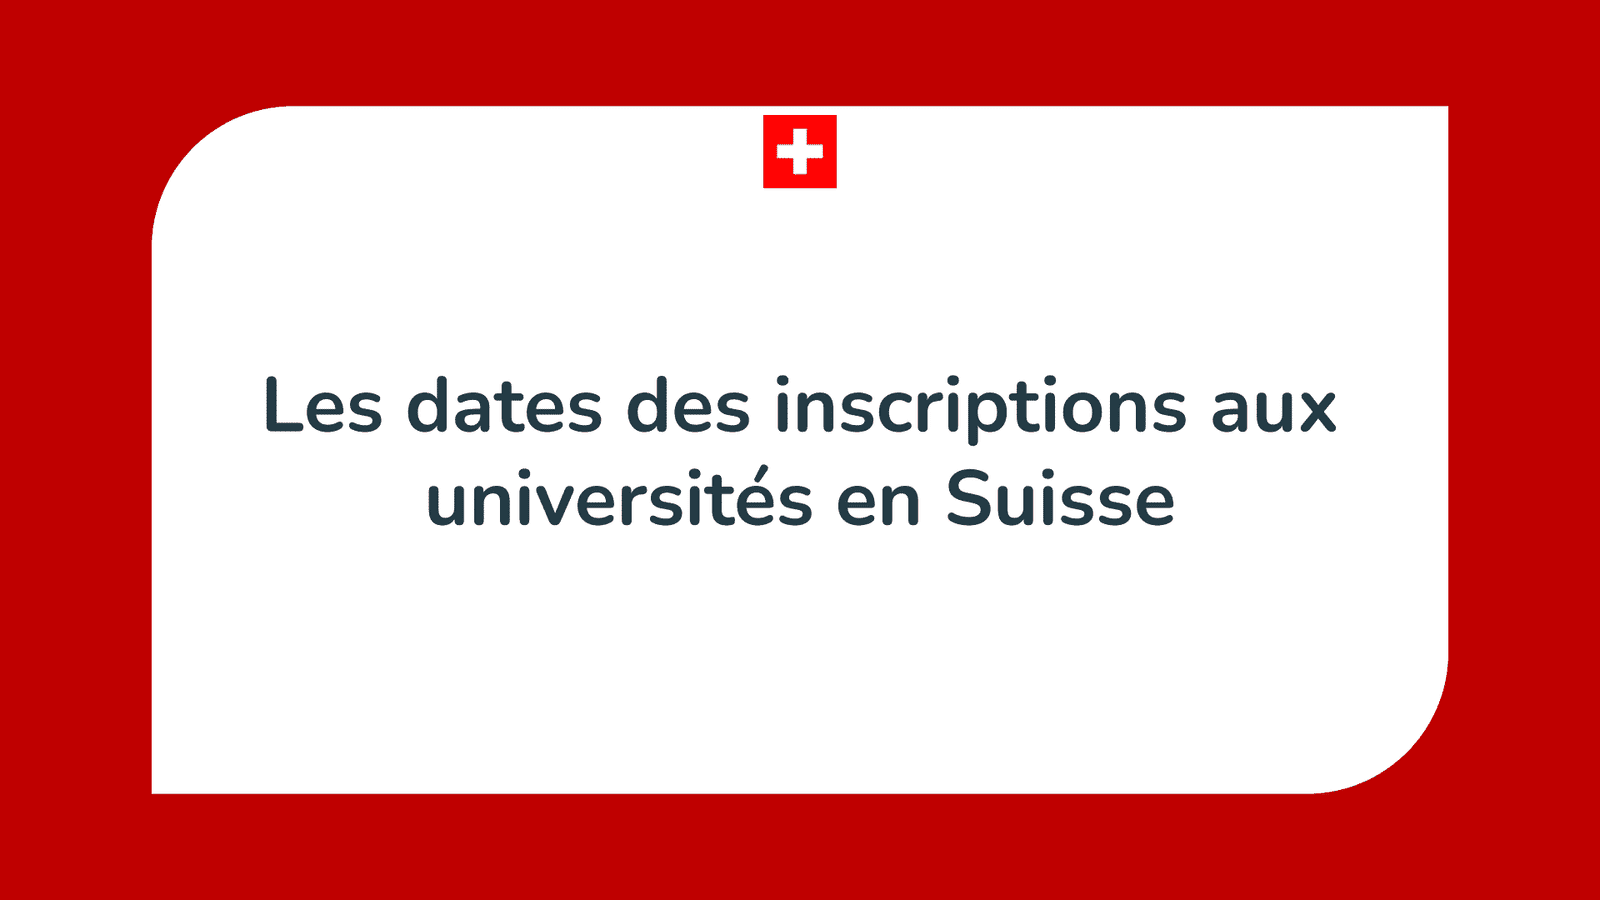 Les dates des inscriptions aux universités en Suisse